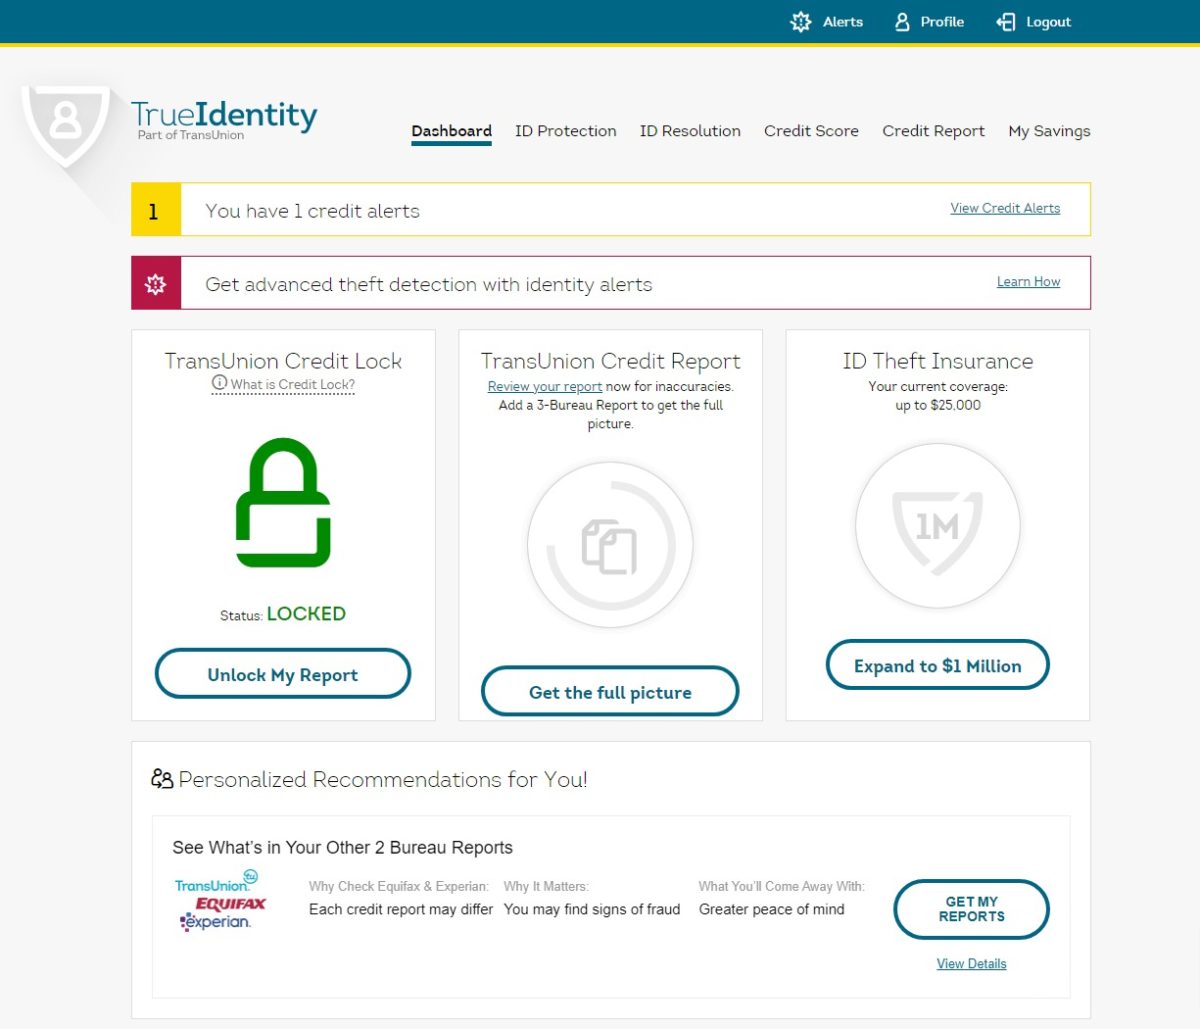 TrueIdentity website by TransUnion